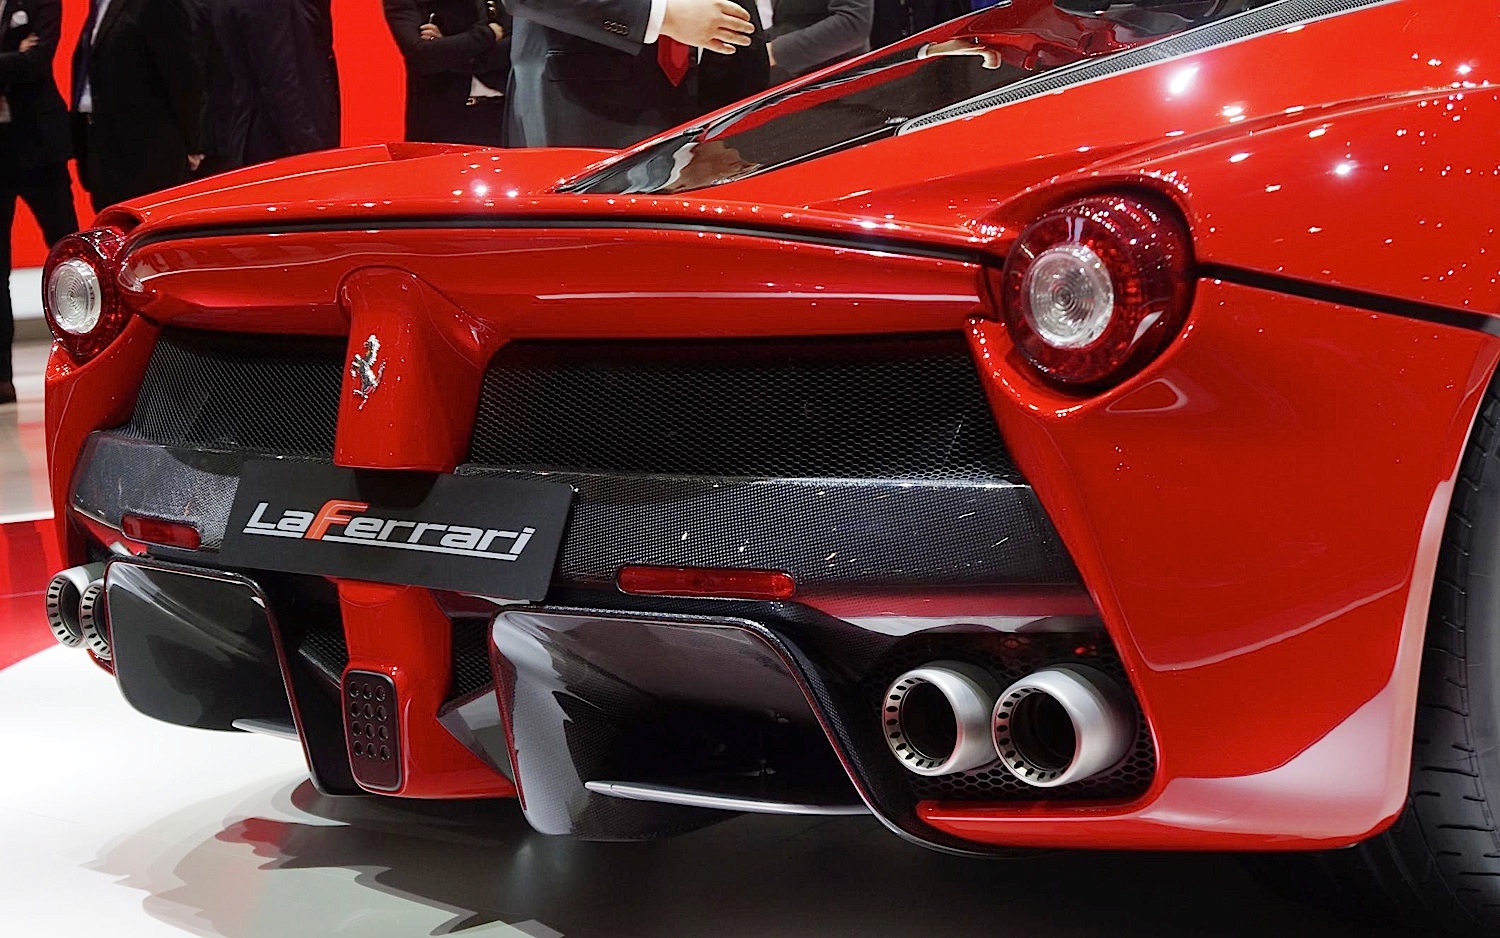 Ferrari Laferrari Specs And Photos 2013 2014 2015 Autoevolution